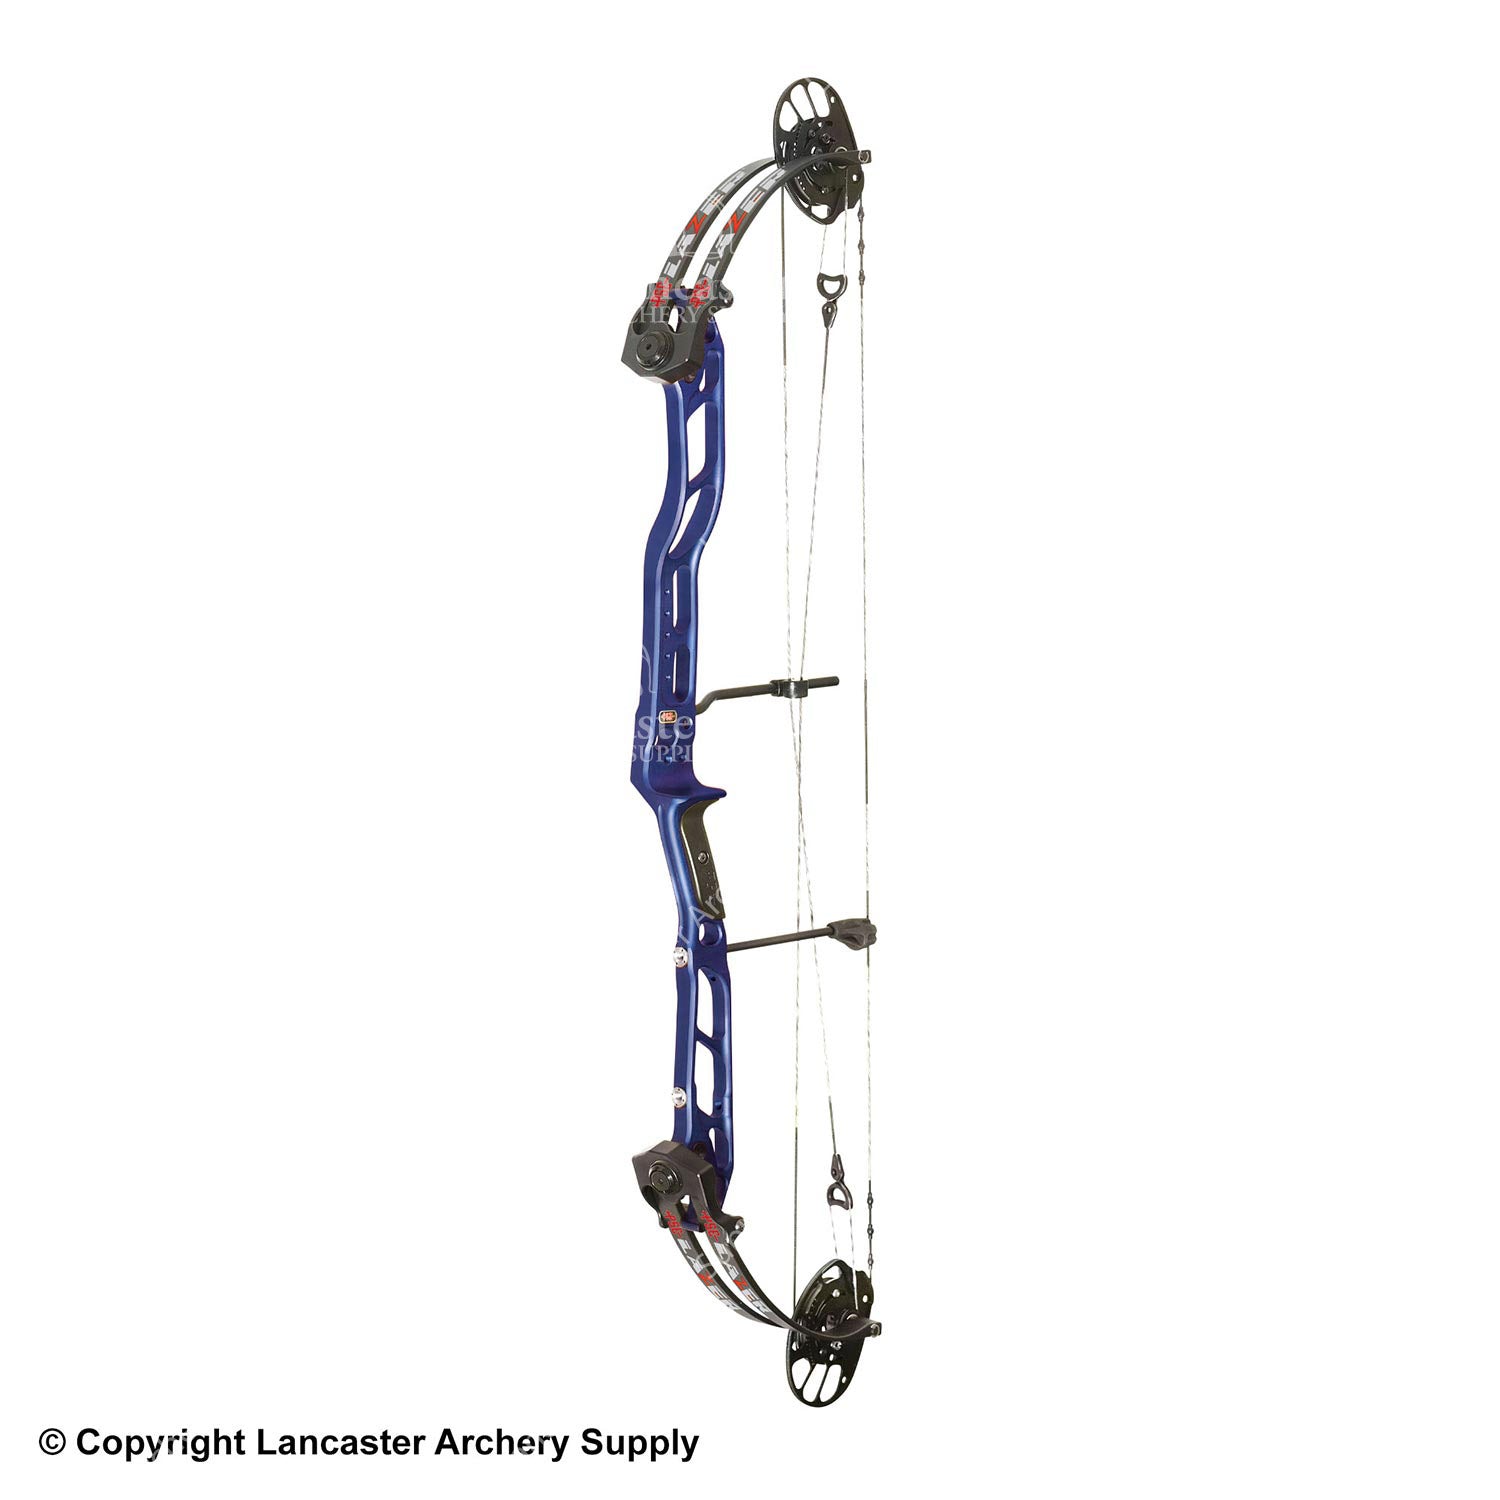 PSE Lazer Target Compound Bow – Lancaster Archery Supply